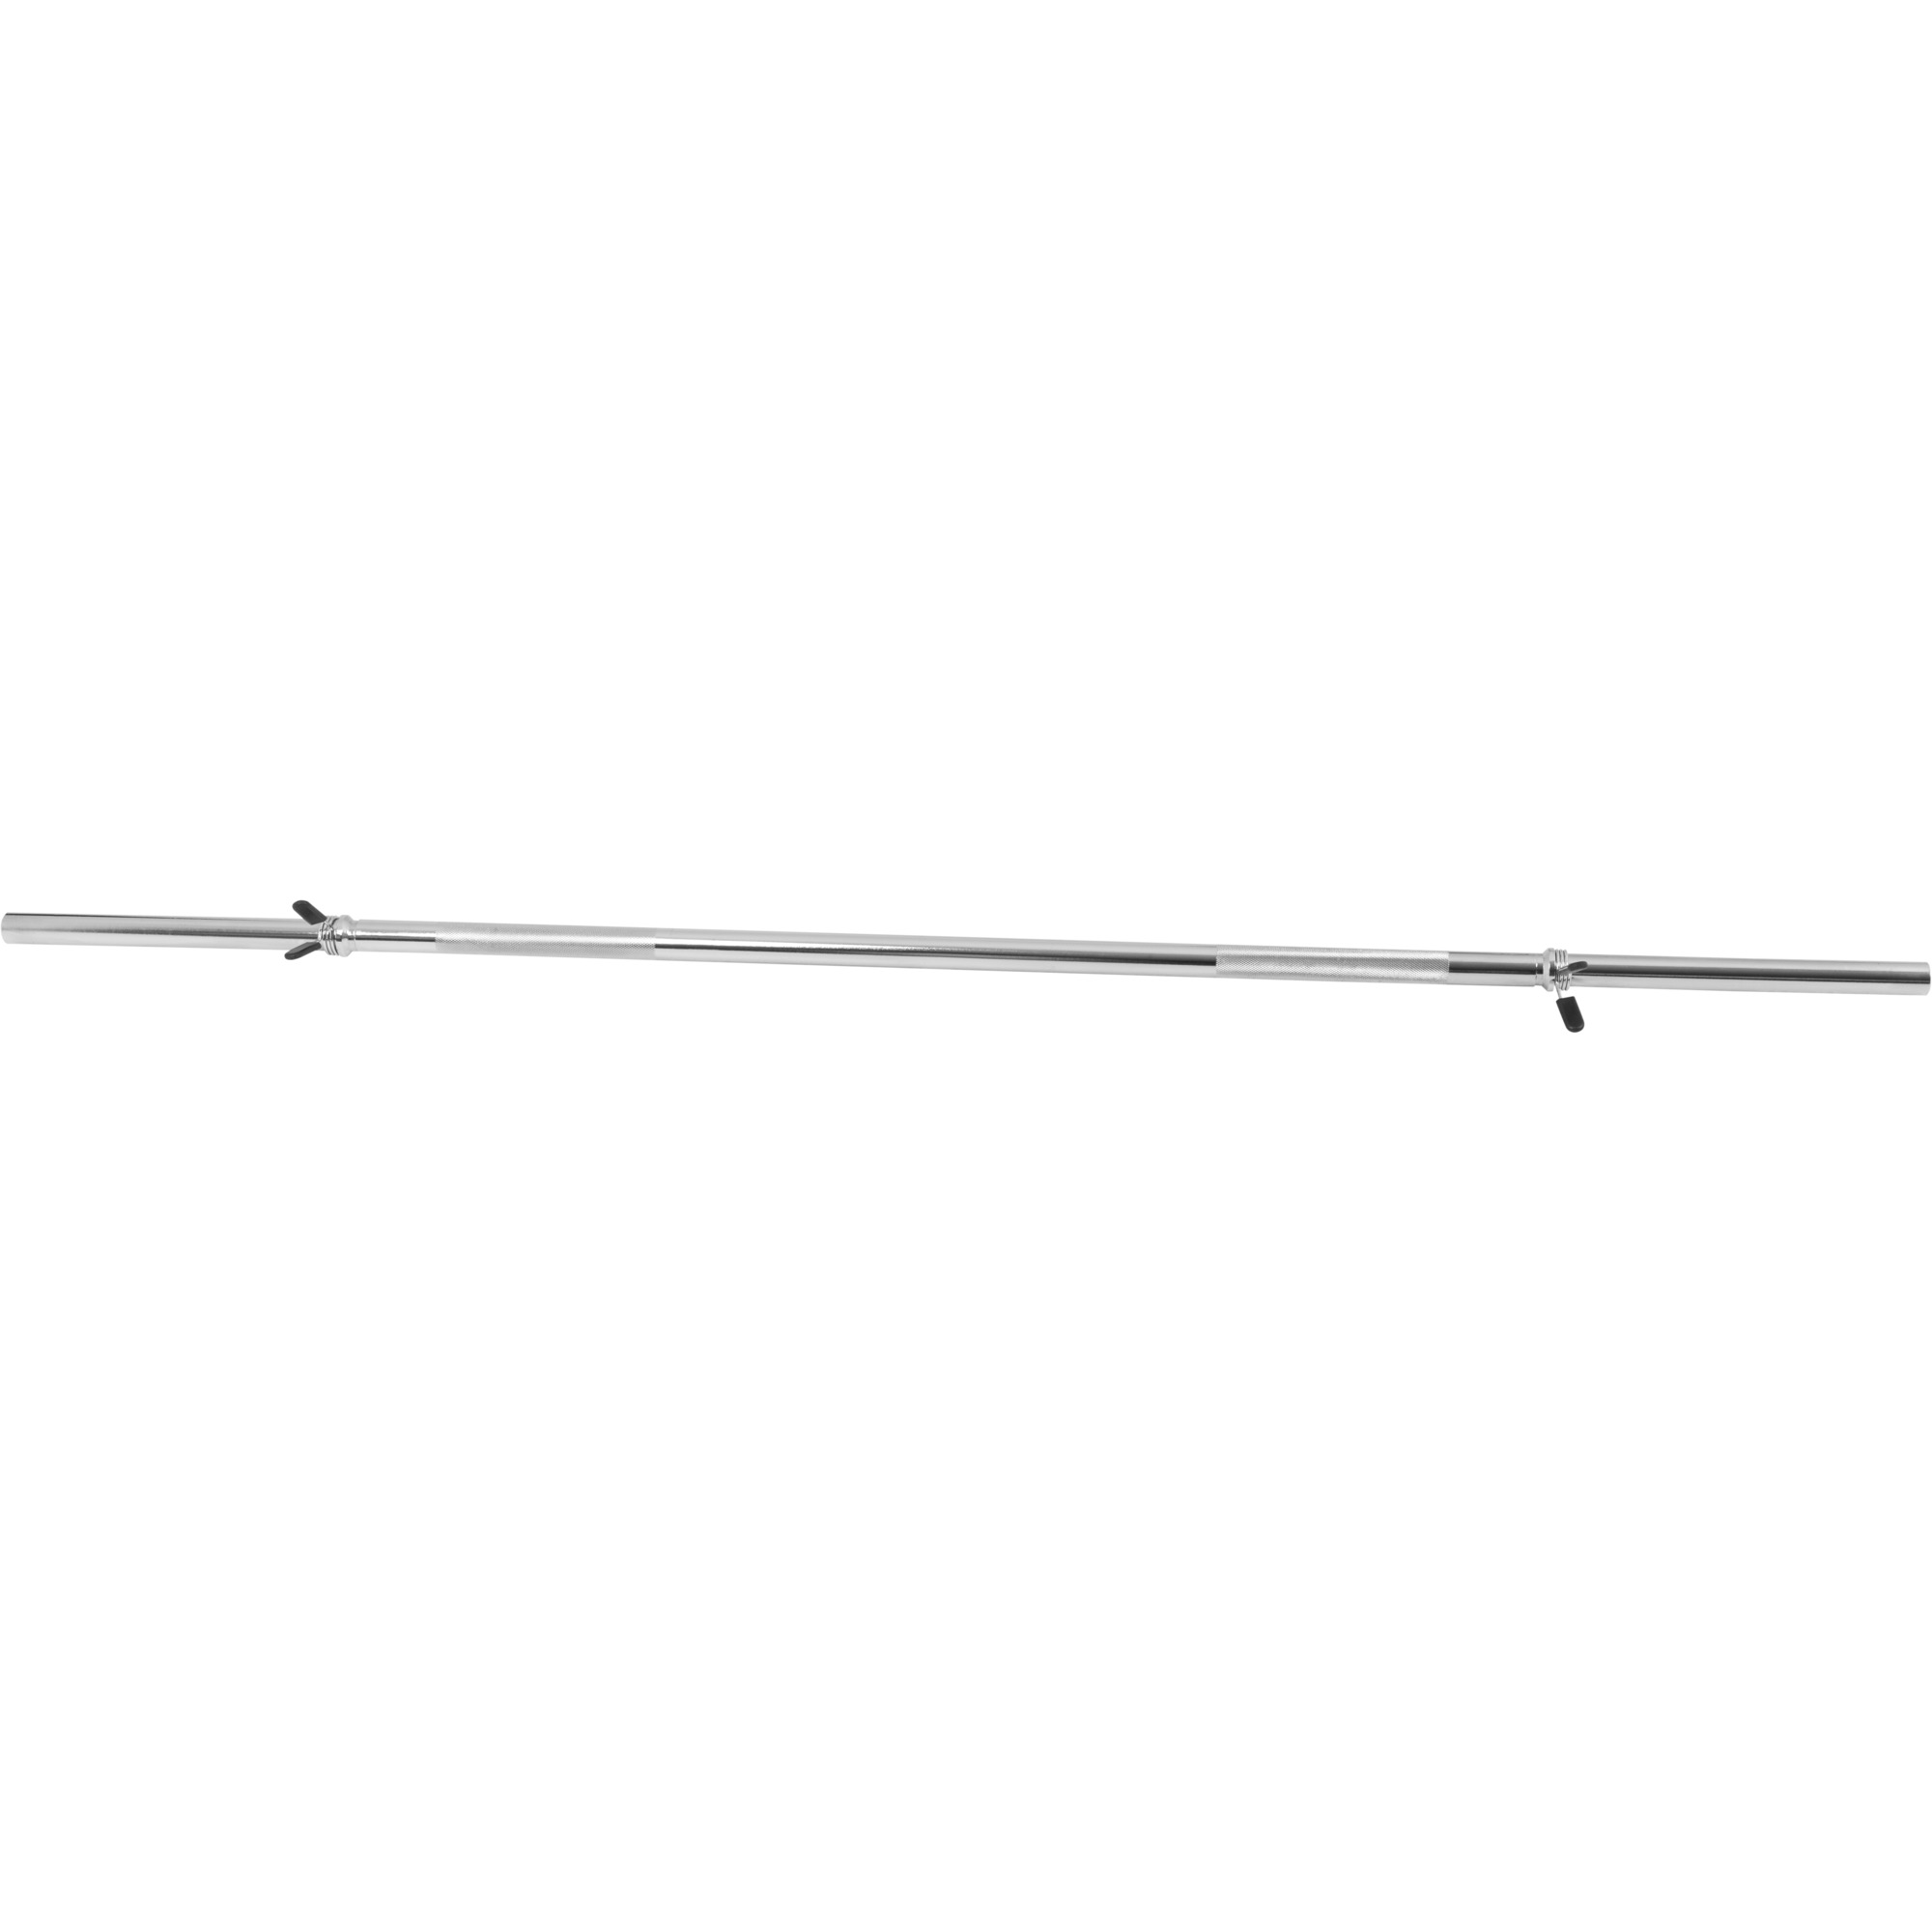 Barre longue avec stop disques 170cm, diamÃ¨tre 30 mm